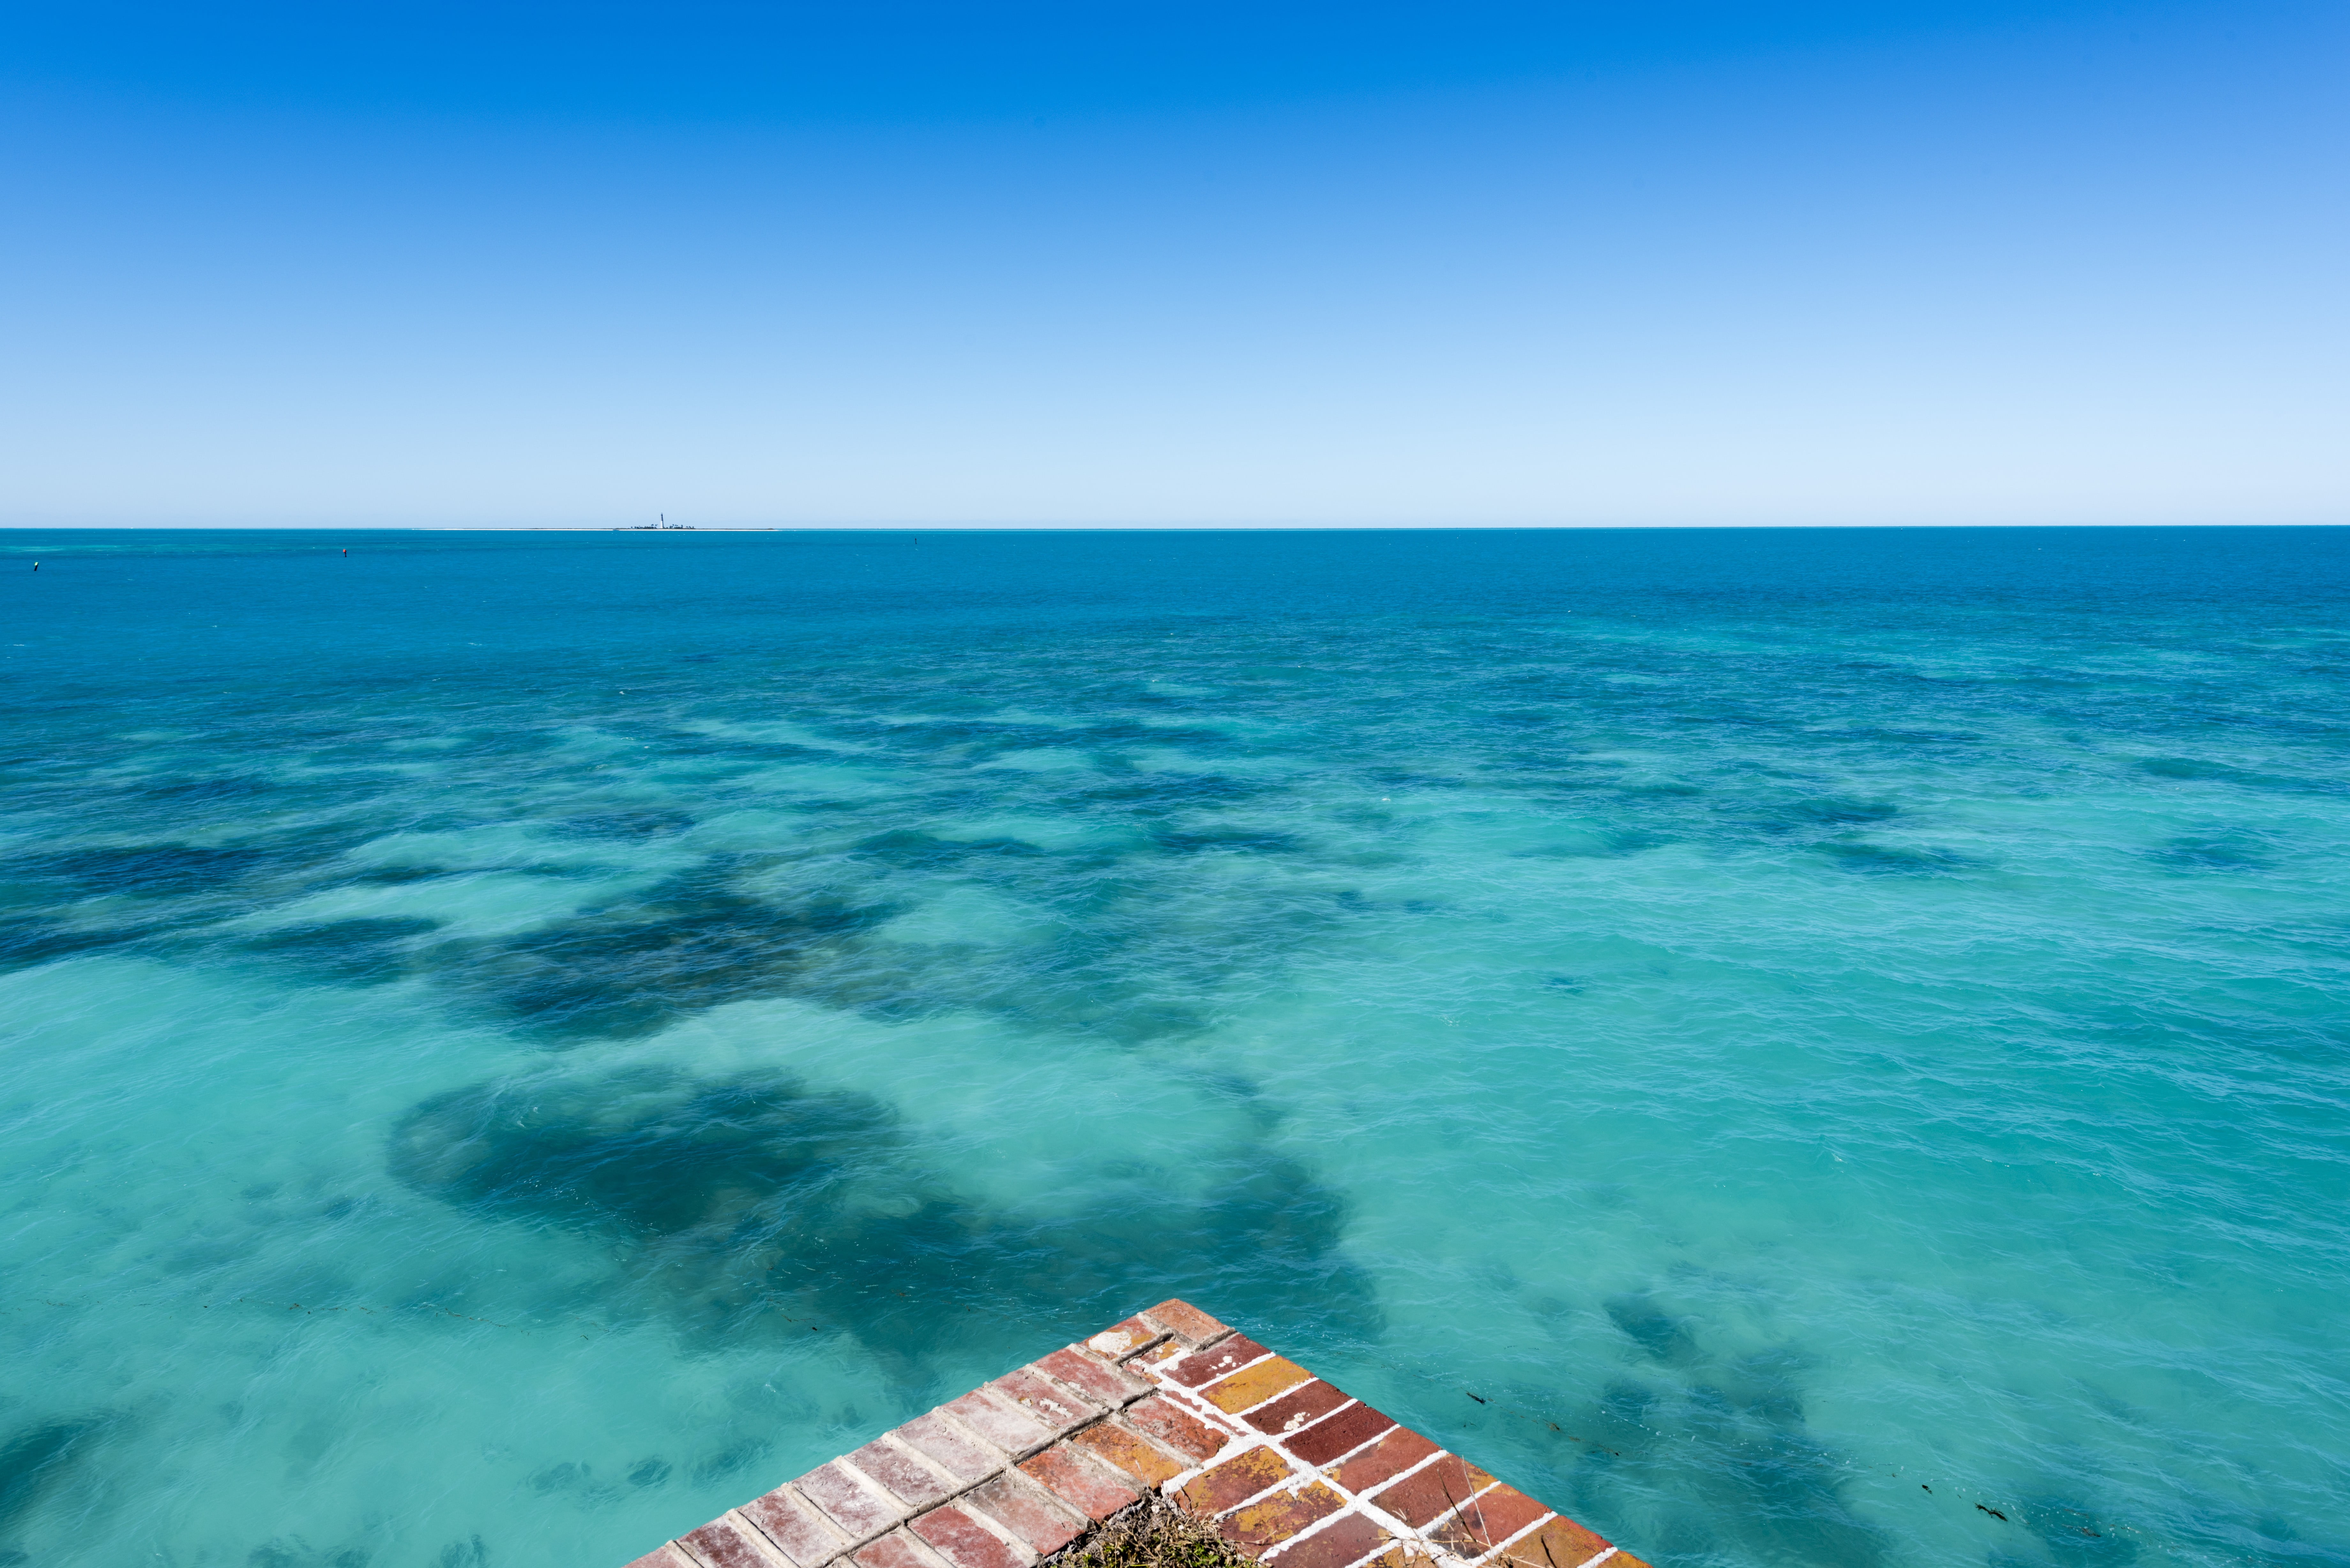 Body of water, Pacific Ocean, sea, landscape, blue HD wallpaper ...